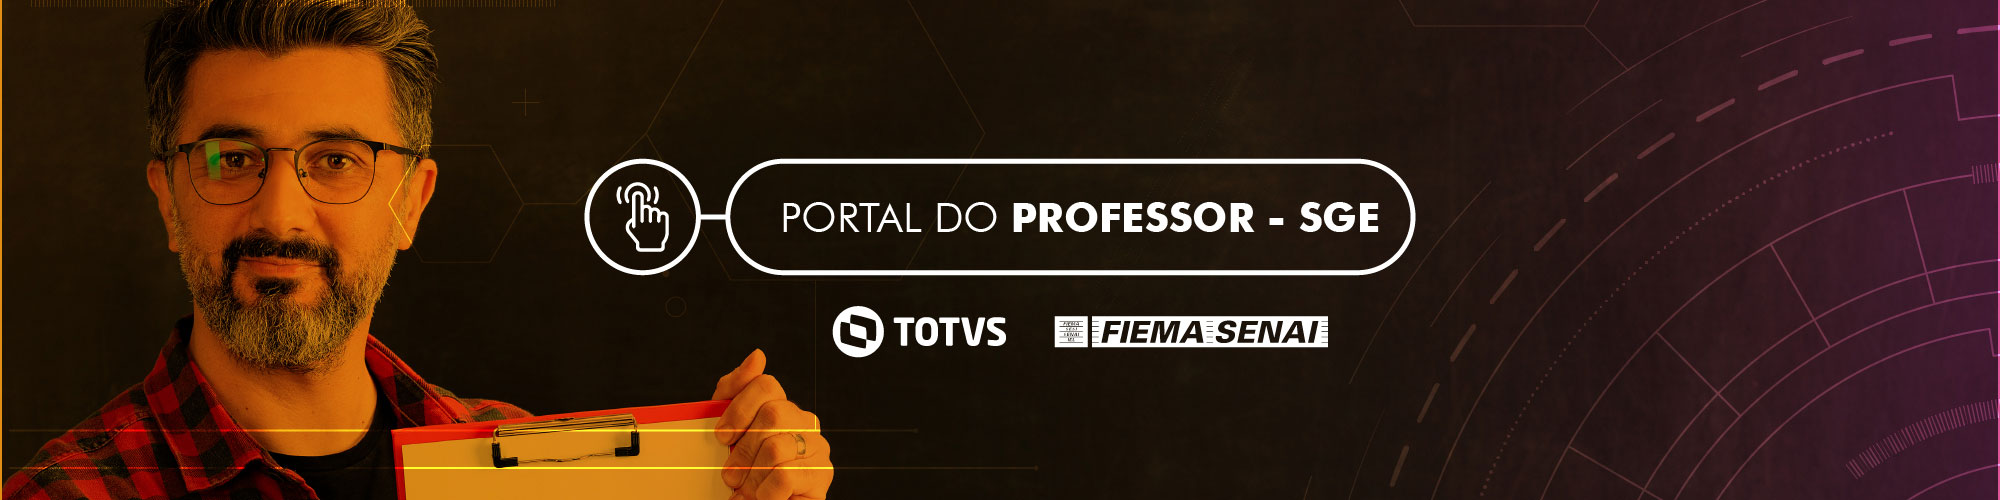 SENAI - Portal do professor